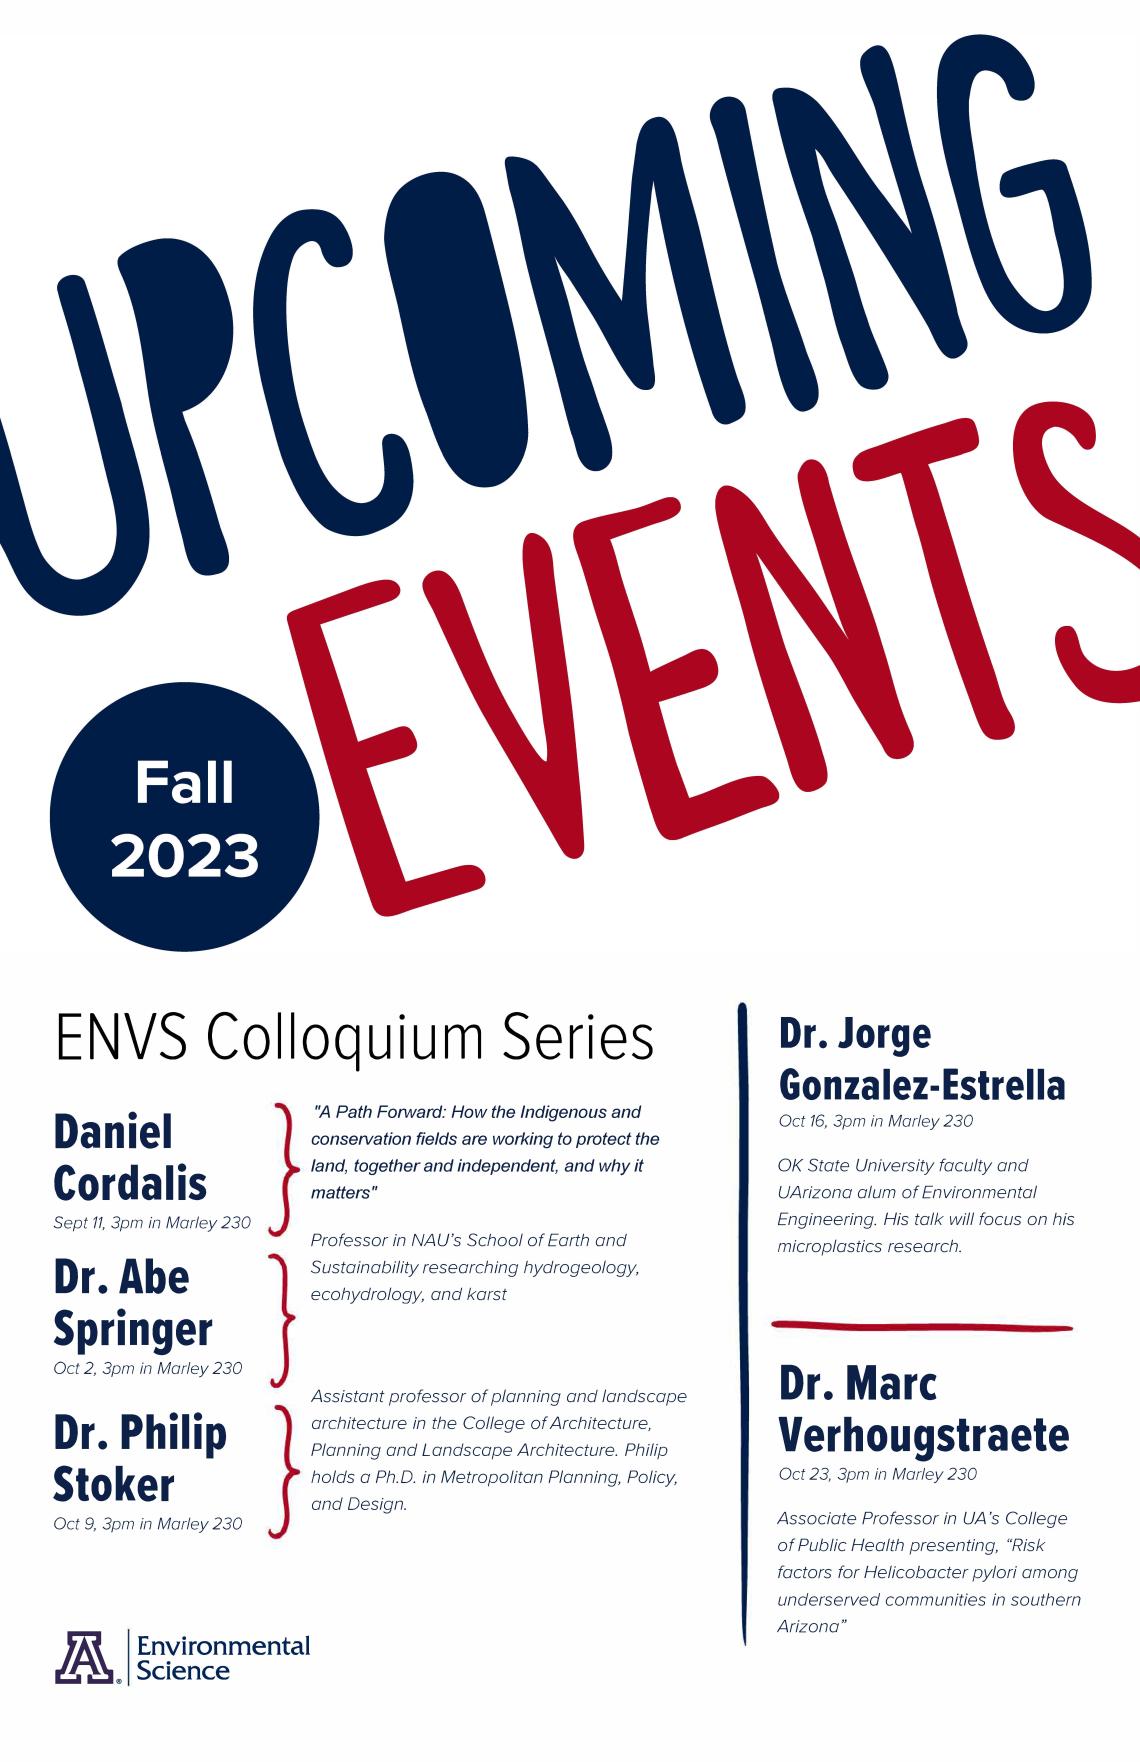 Schedule for ENVS Colloquium